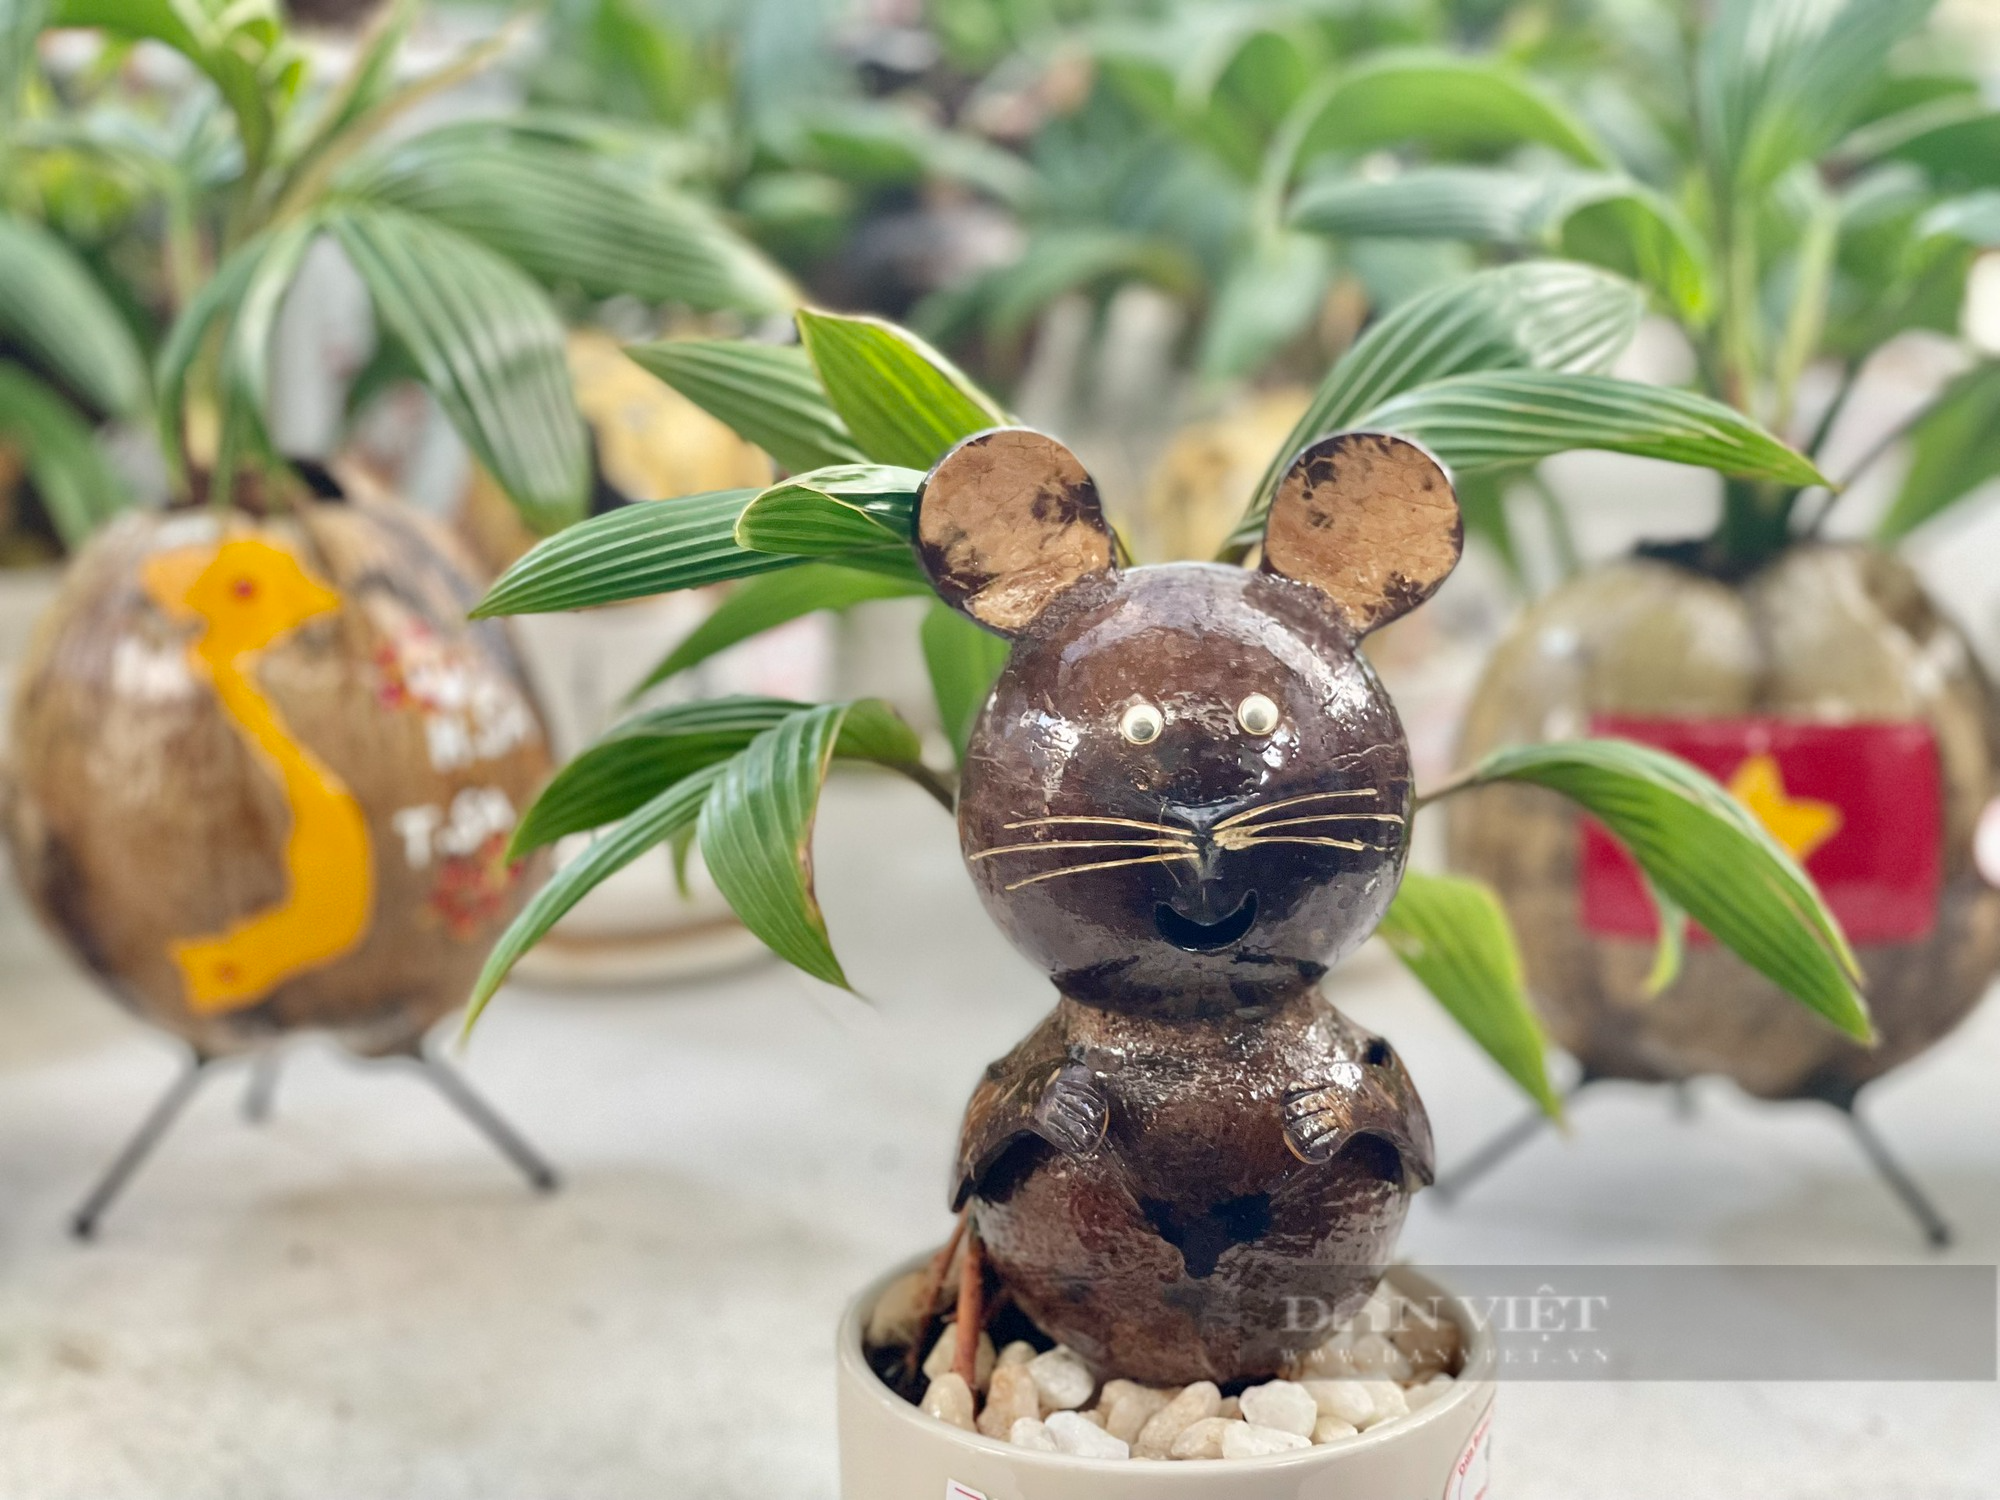 Từ quả dừa khô bỏ đi, nông dân Sài Gòn làm giàu nhờ tạo bonsai độc lạ - Ảnh 7.